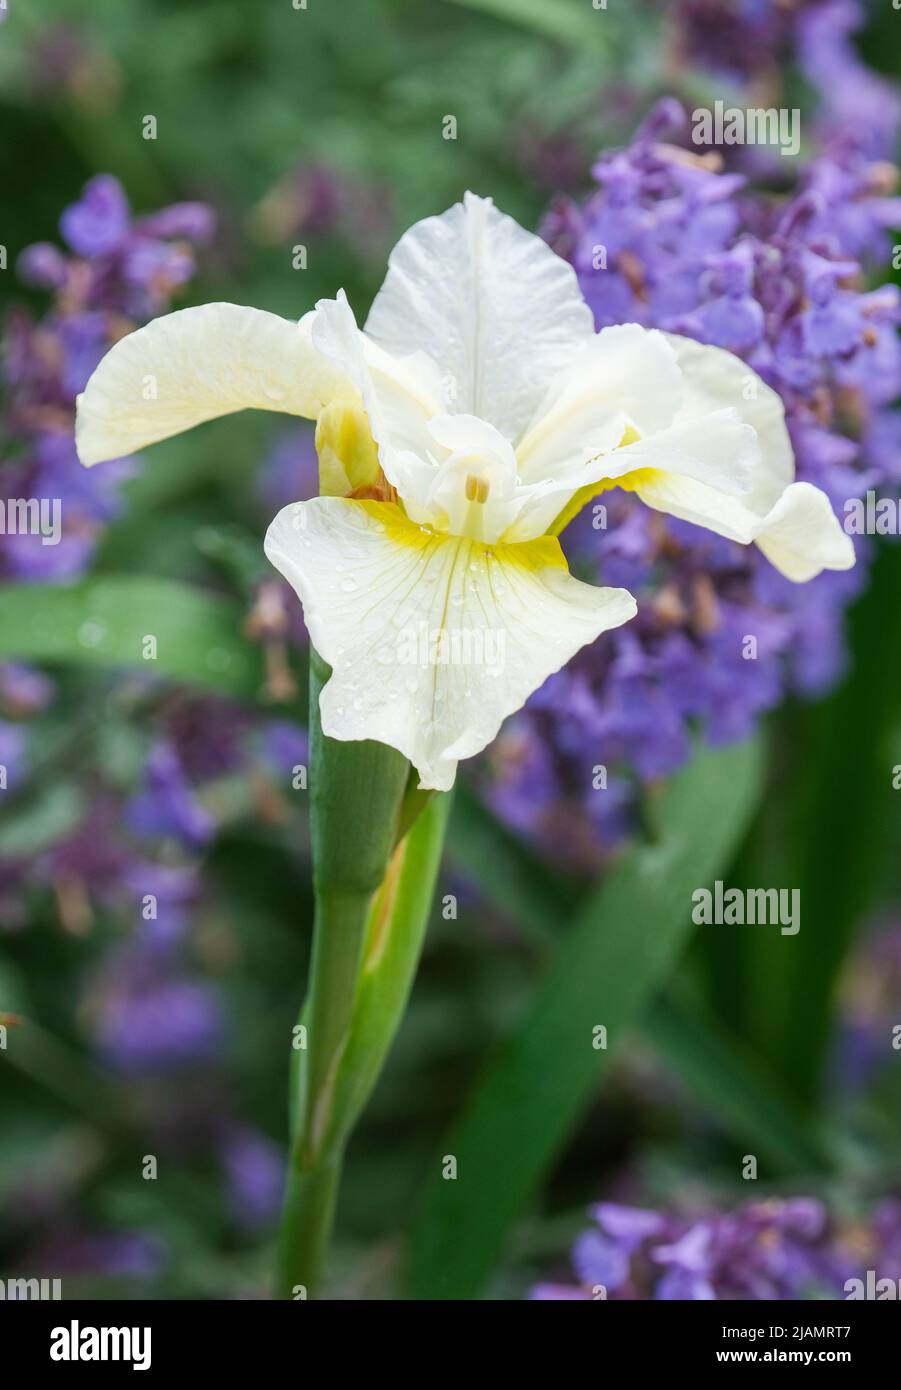 Iris 'White Swirl', Siberian iris 'White Swirl', Iris sibirica 'White Swirl. Pure white flowers with yellow at the base of the falls. Stock Photo